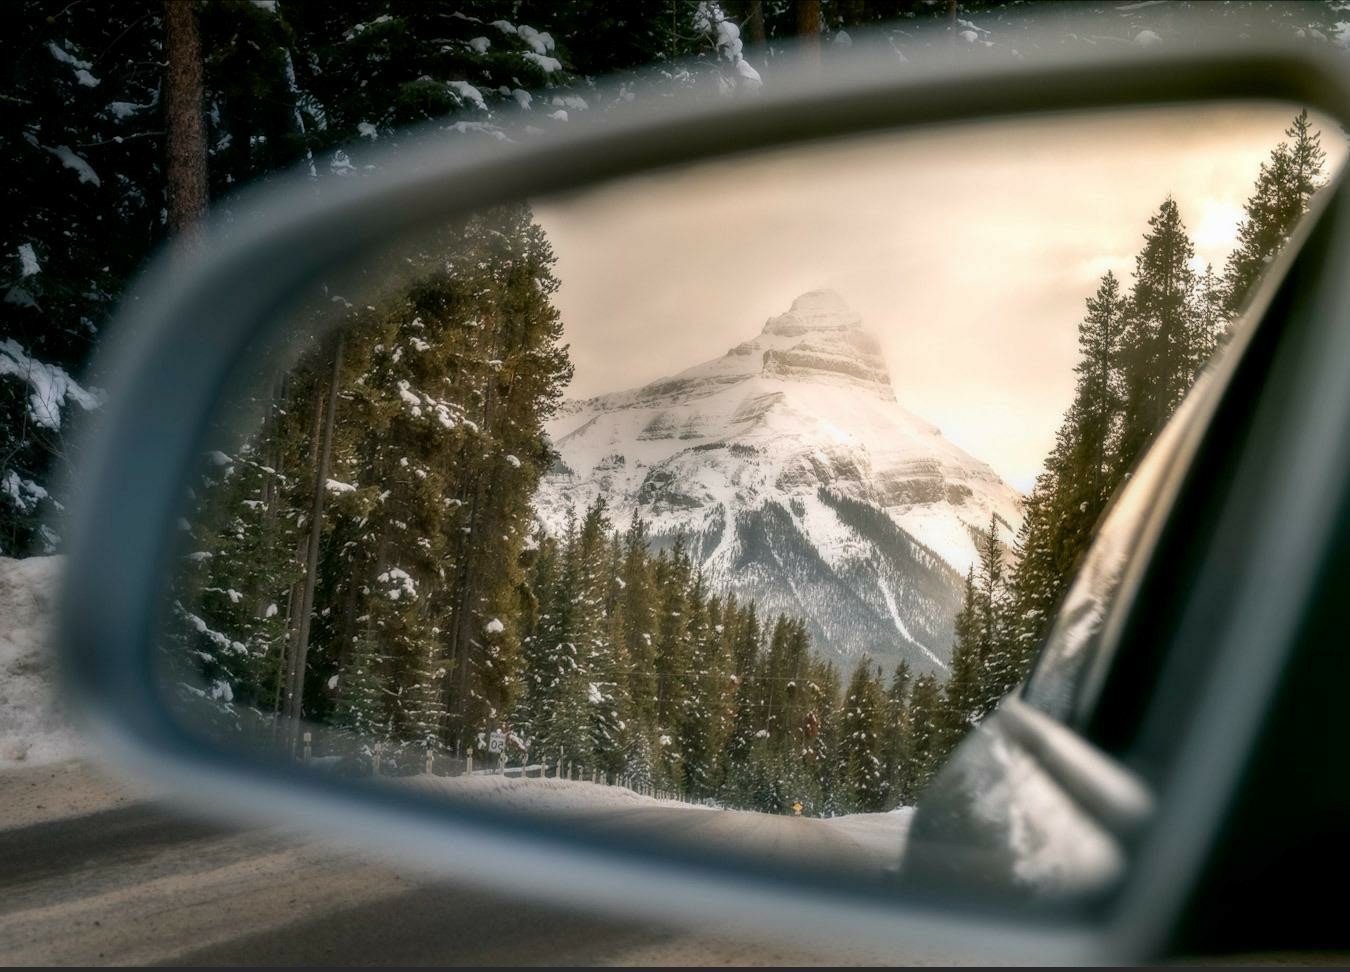 mountain scene through rear view mirror